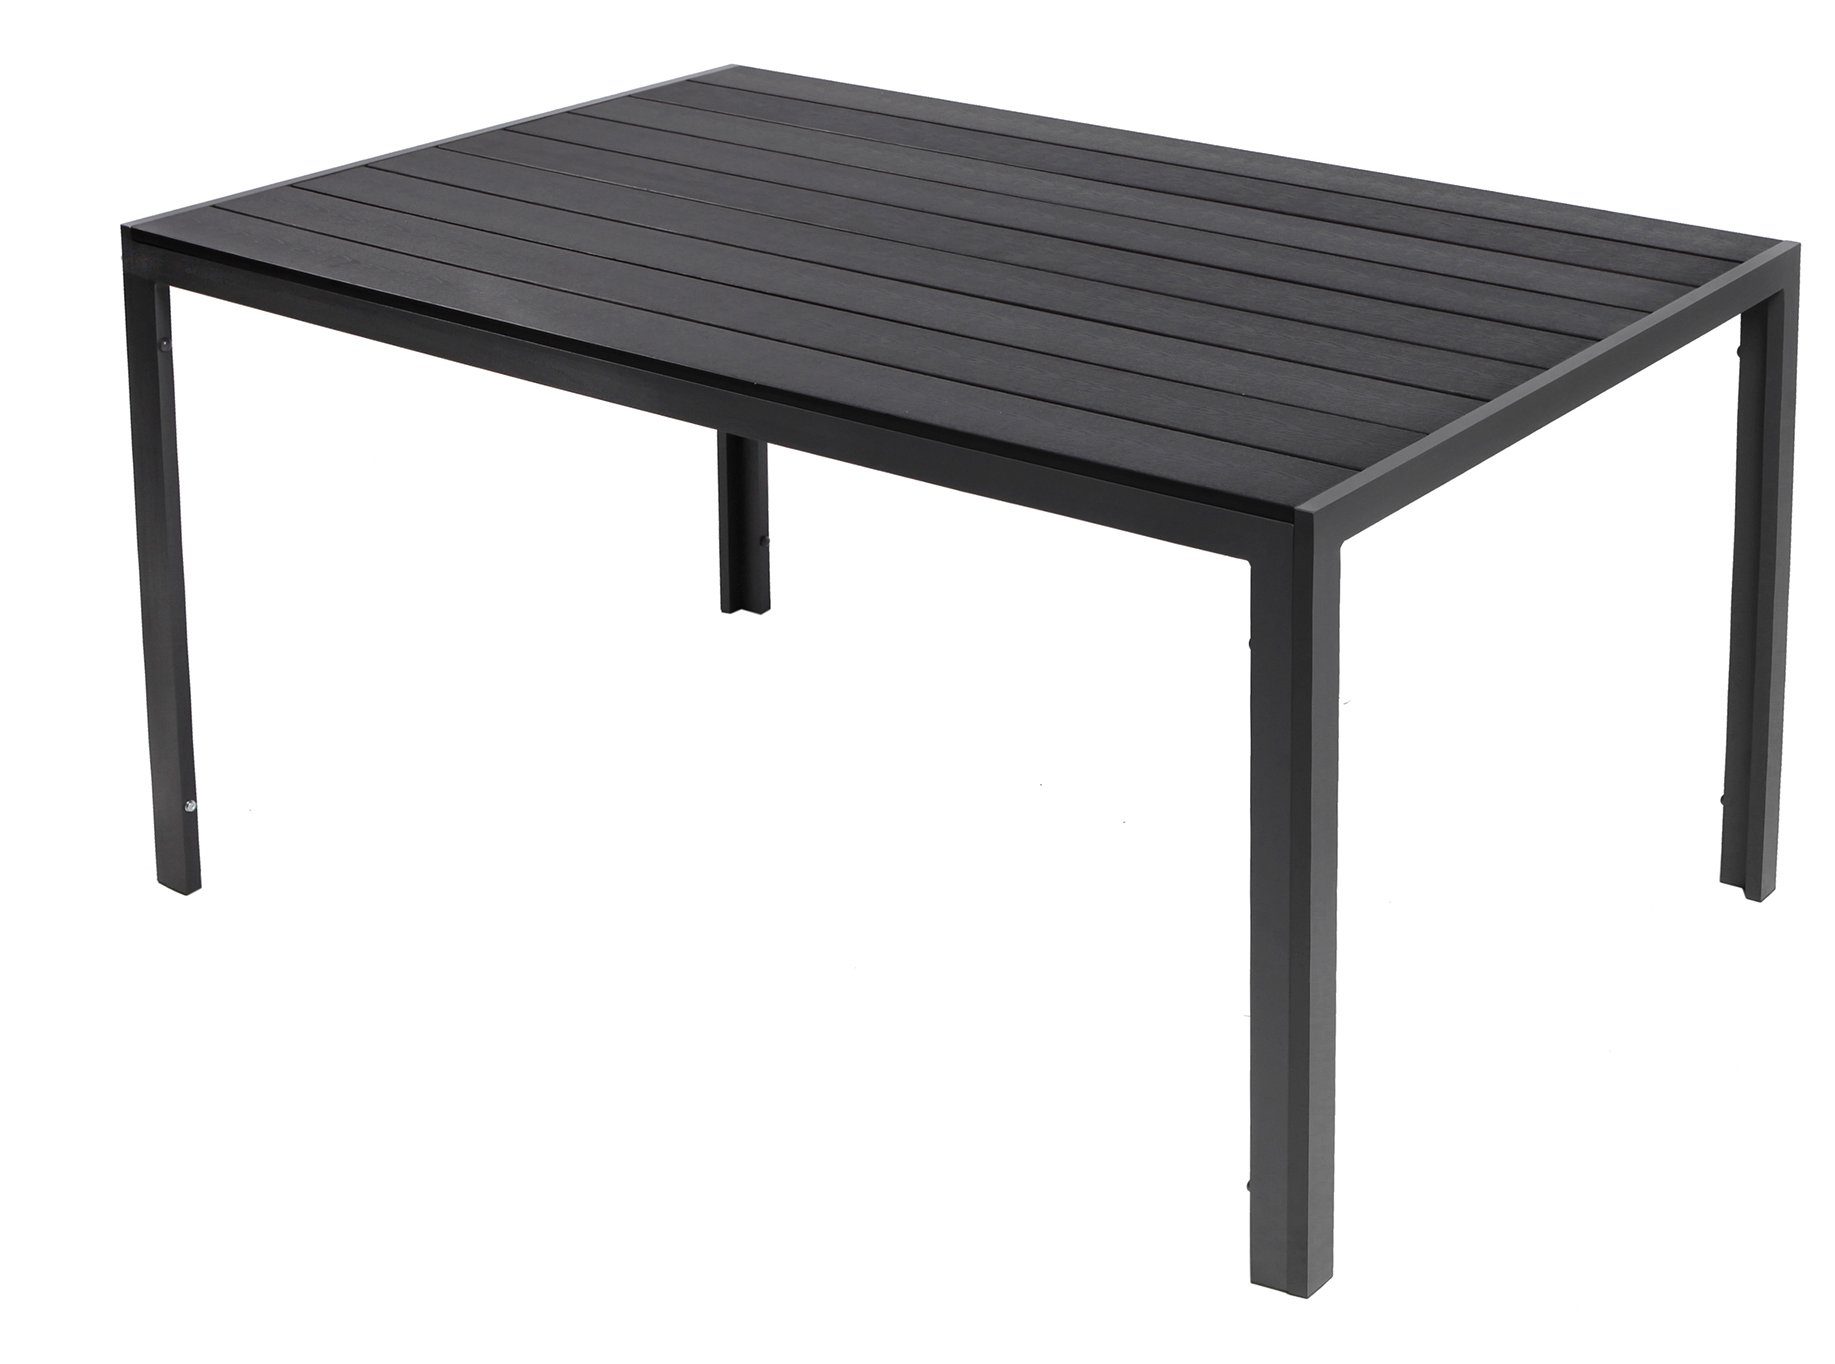 Trendmöbel24 Gartentisch Gartentisch Comfort 150 x 90 cm mit Nonwood Platte Gestell Aluminium | Tische